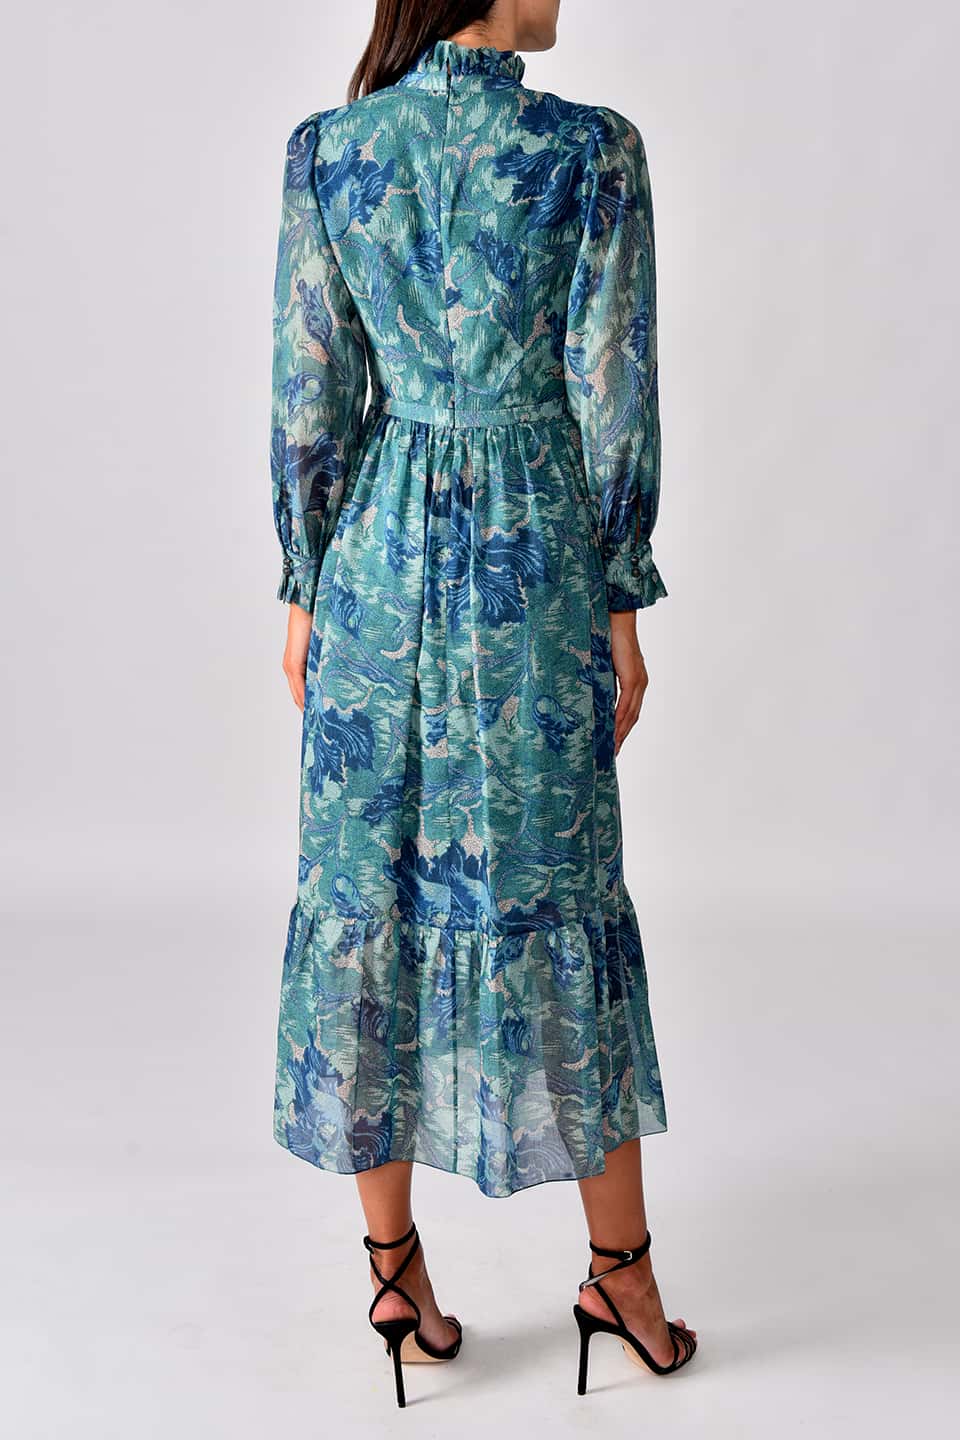 Shop online blue floral dress in UAE. Same day delivery in Dubai for fashion designer dress